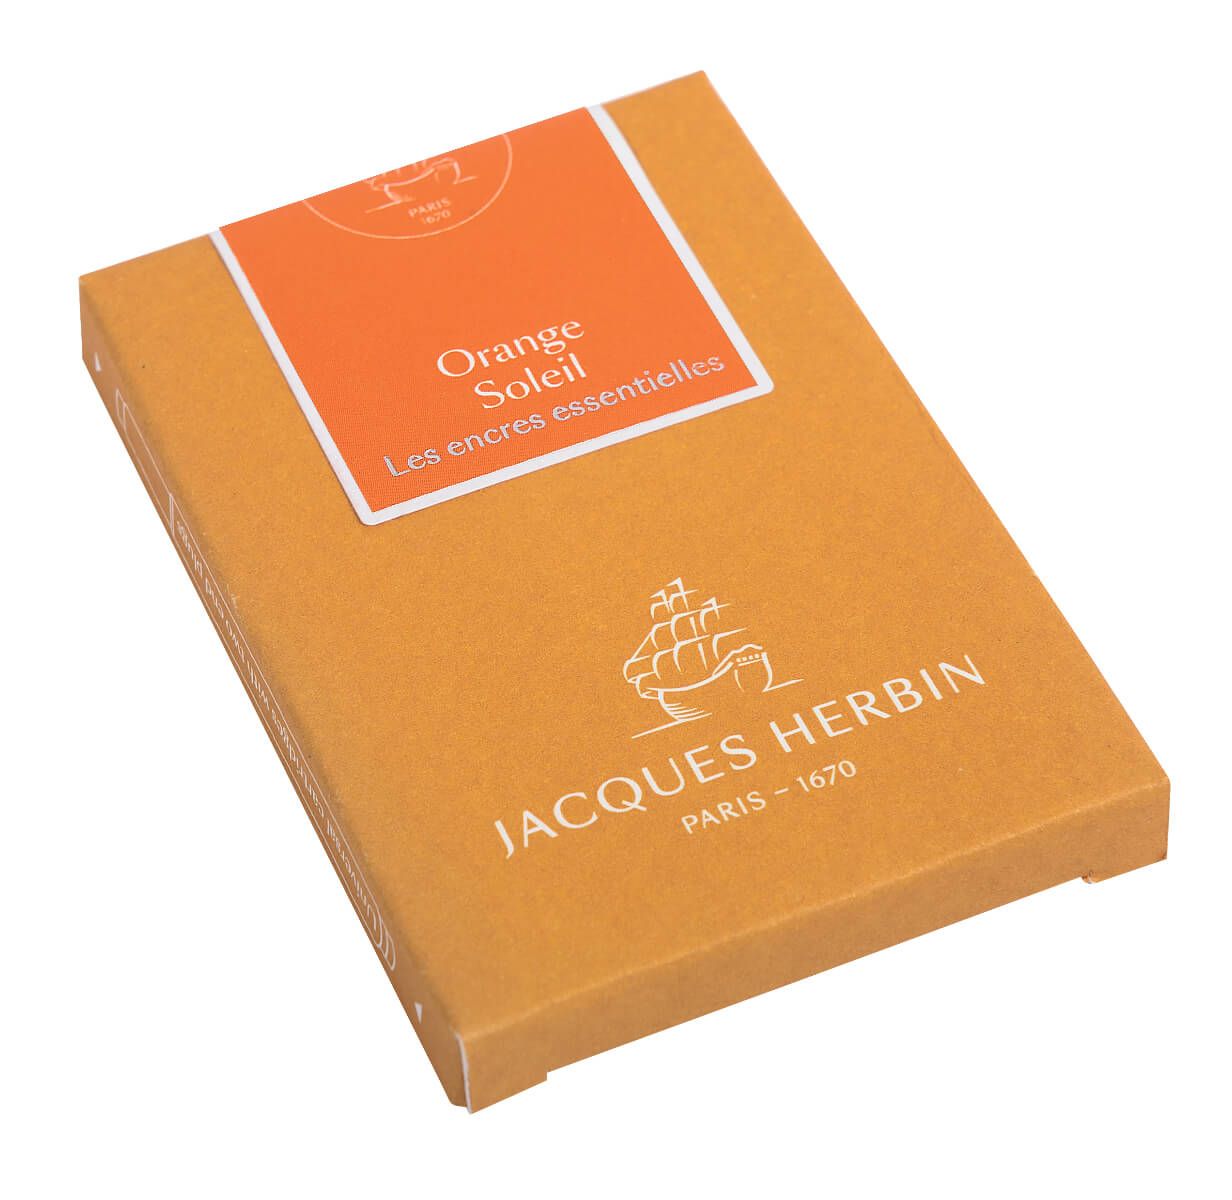 Jacques Herbin Essential Orange Soleil